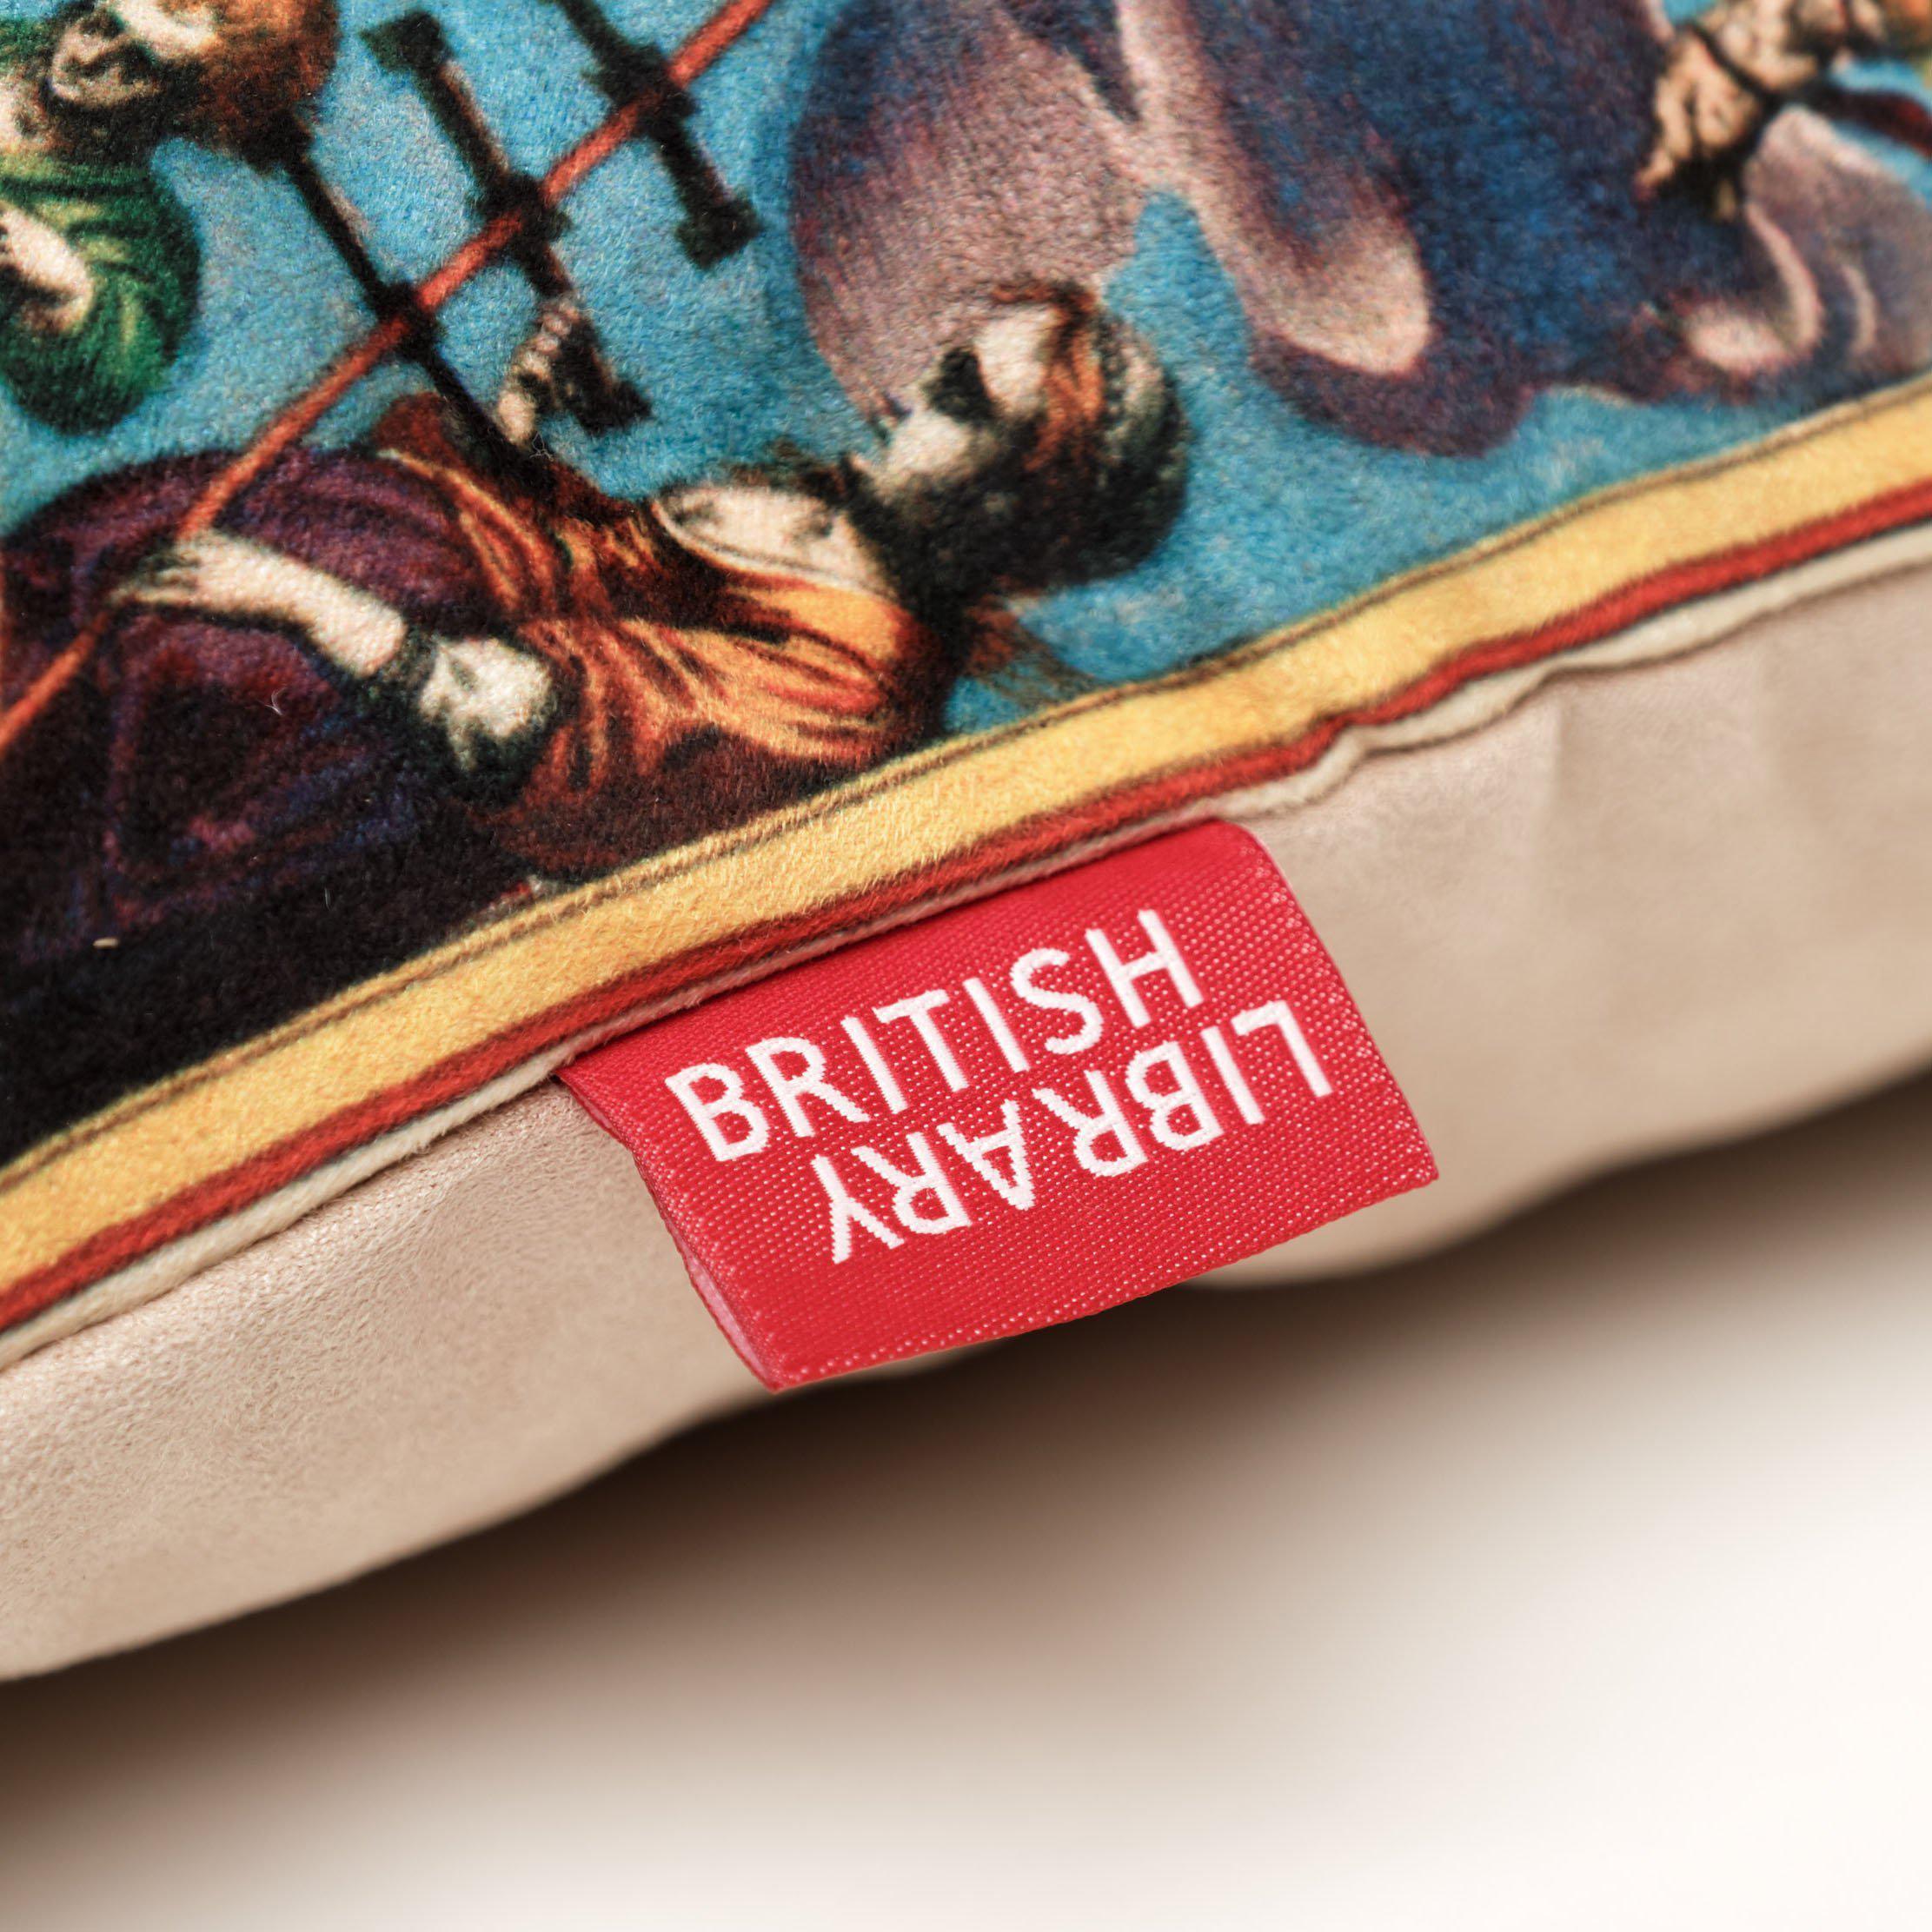 1542 Europe N.Africa British Library Cushions - Handmade Cushions UK - WeLoveCushions